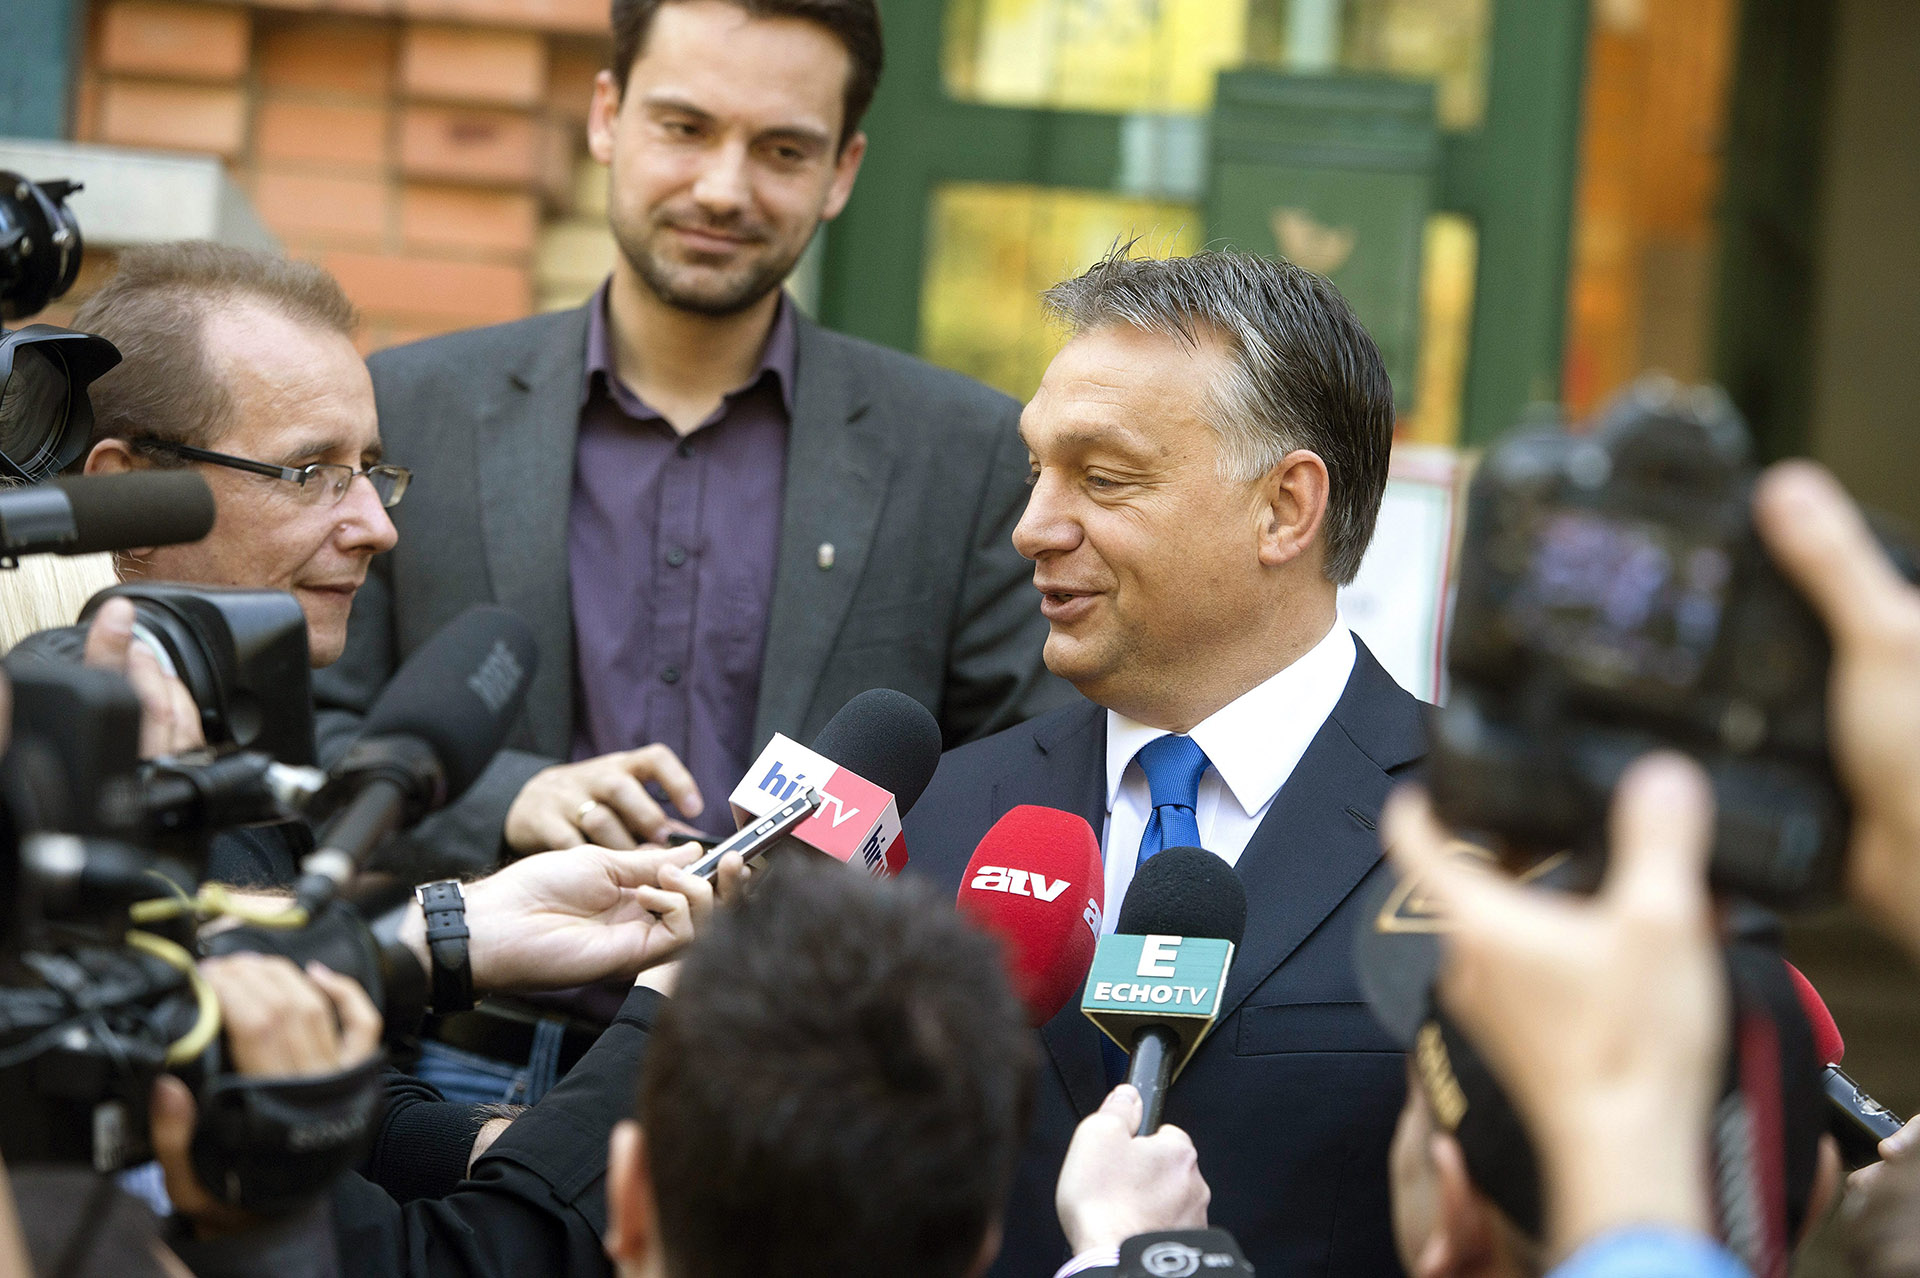 Miniszterelnökségi Sajtóiroda: Hazudik, aki szerint Orbán Viktor vagyonnyilatkozata nem felel meg a valóságnak